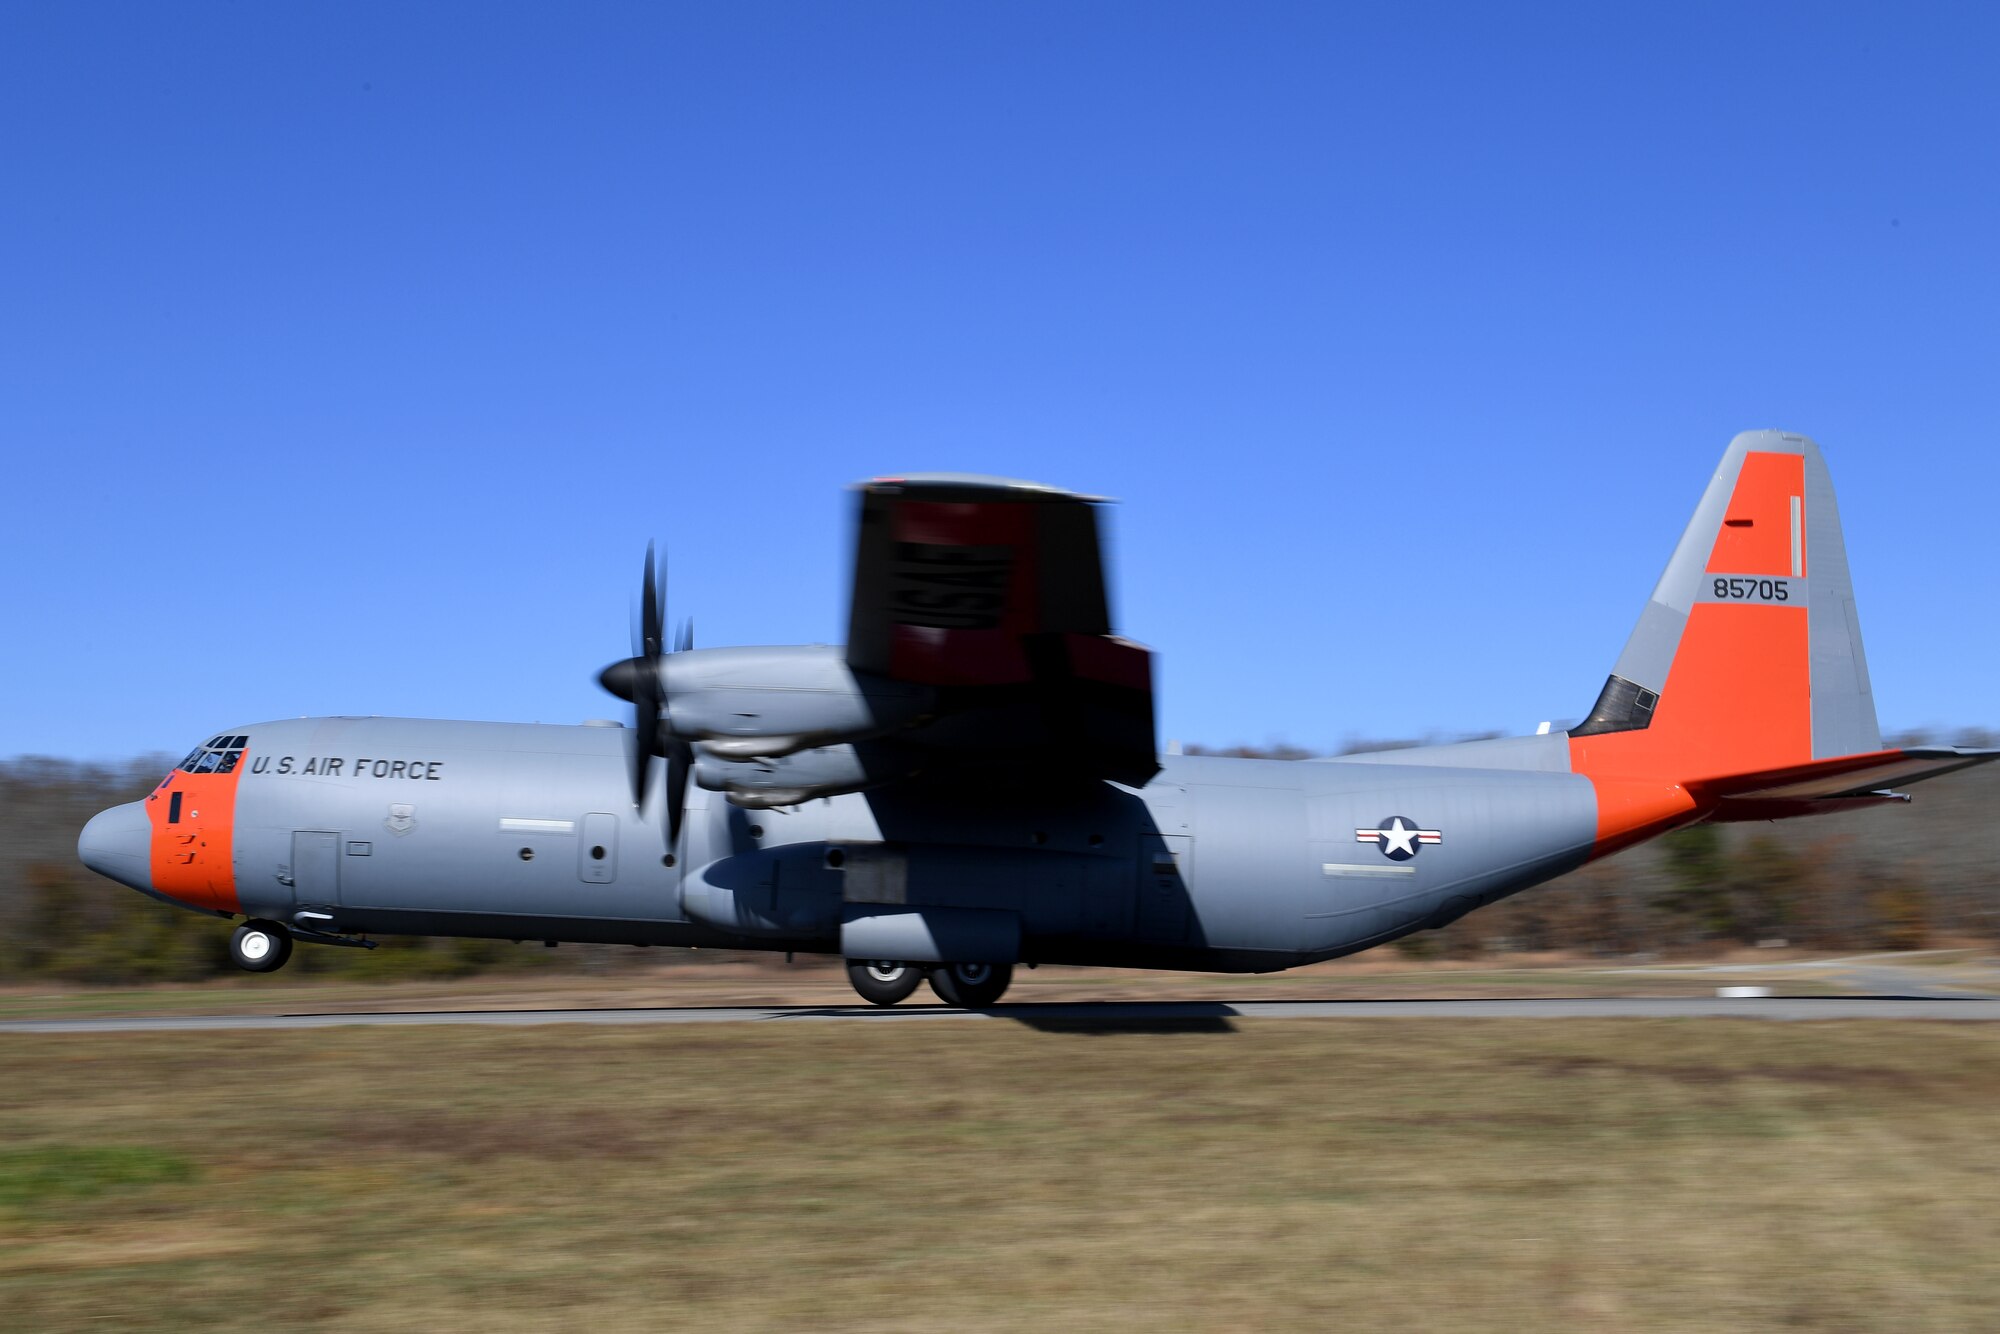 -C-130J lands on makeshift runway